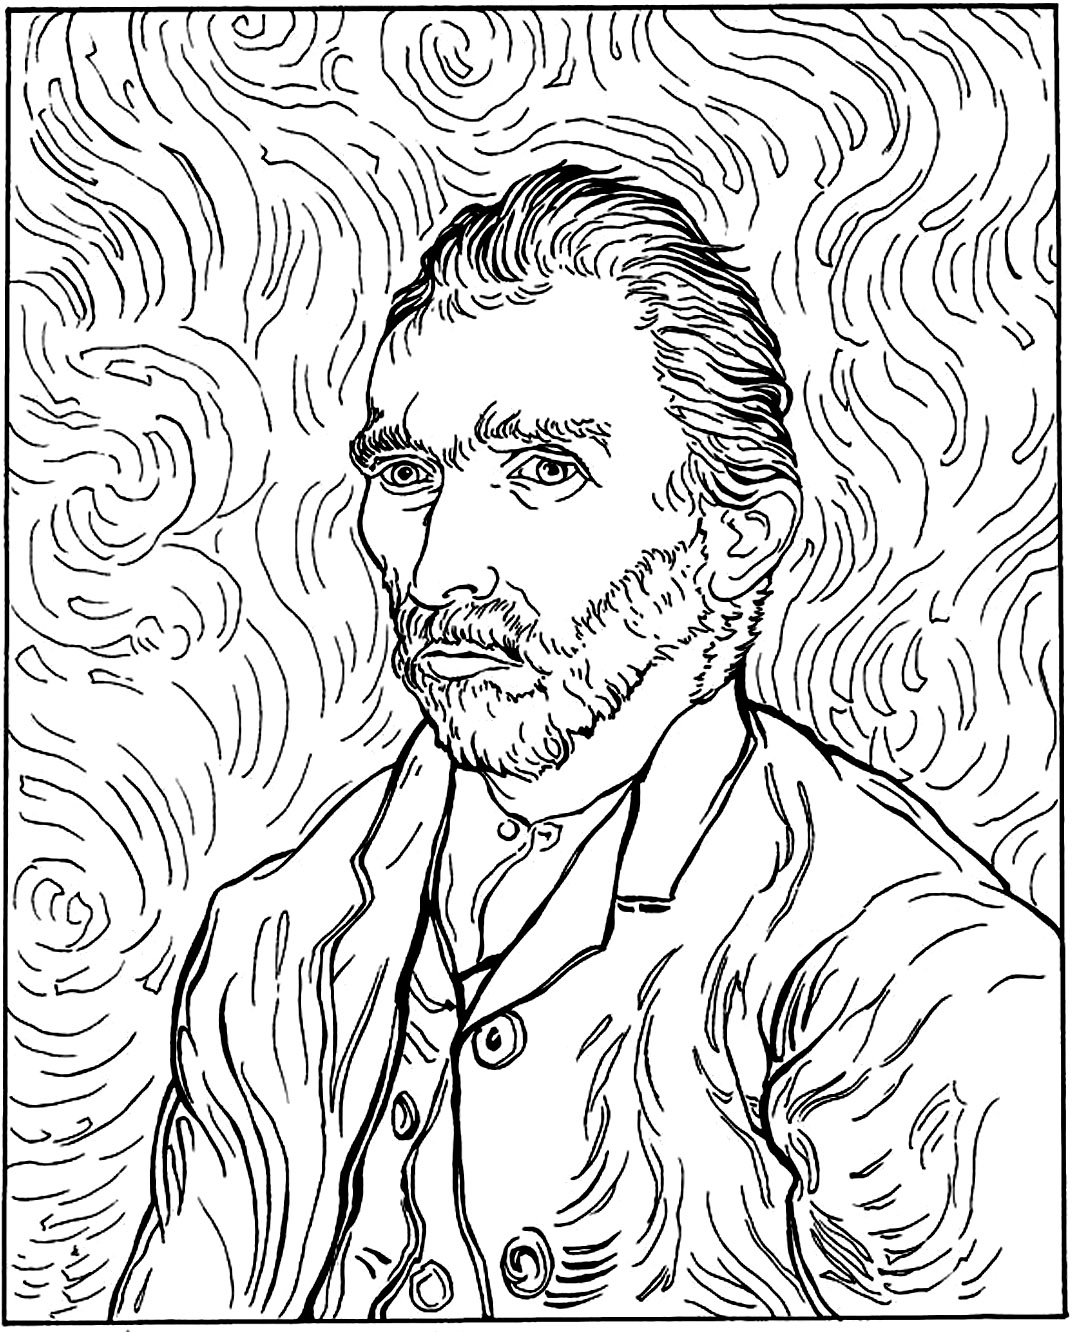 Image de Van Gogh à colorier, facile pour enfants